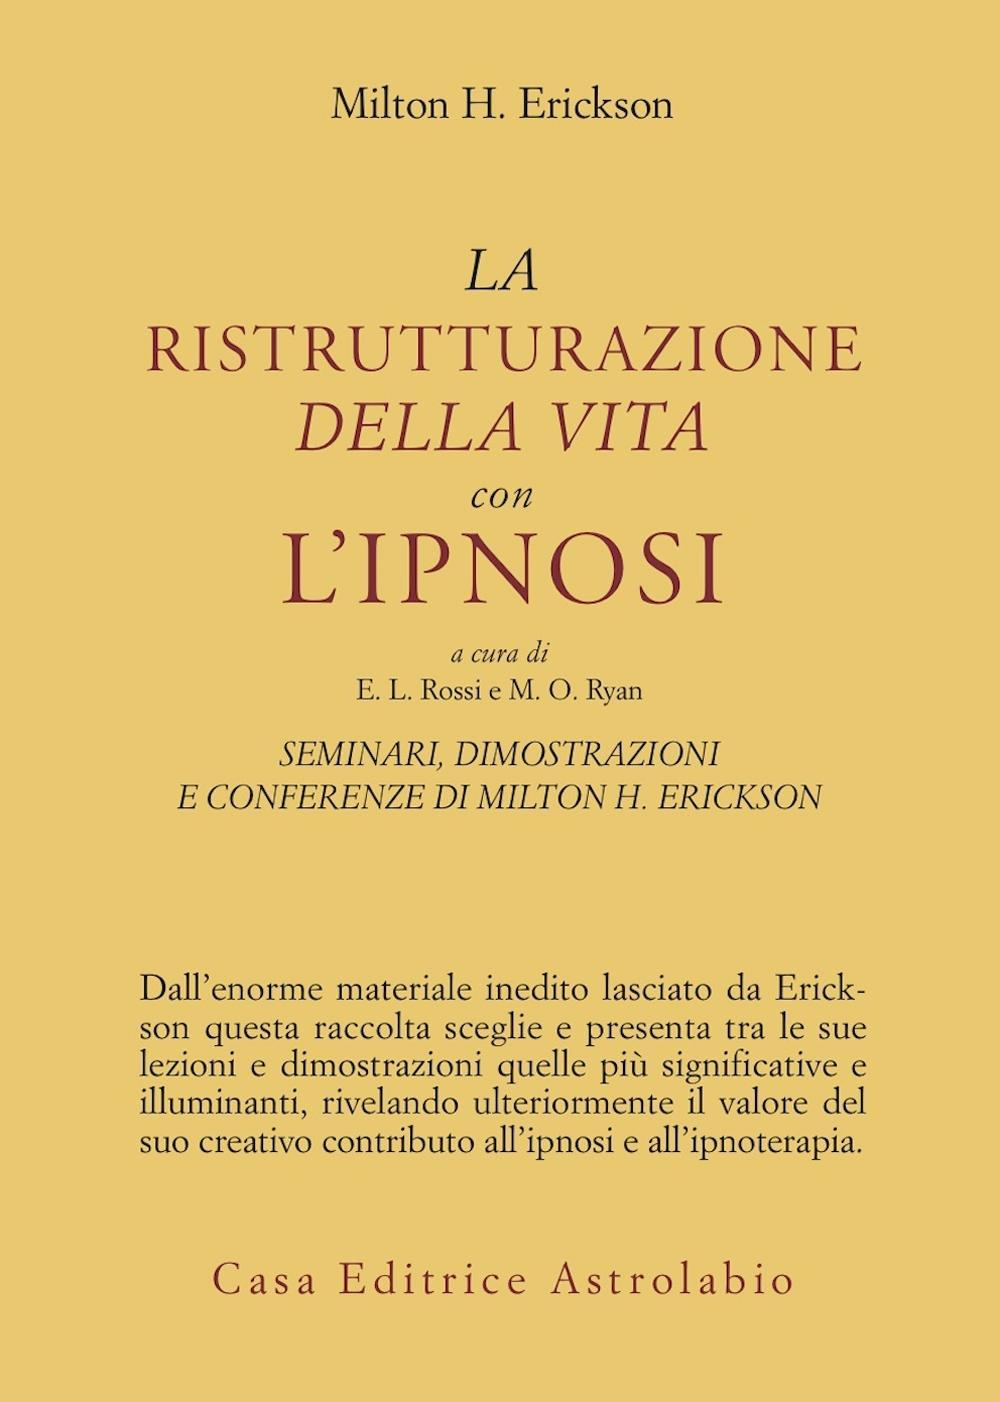 Image of Seminari, dimostrazioni, conferenze. Vol. 2: La ristrutturazione della vita con l'Ipnosi.